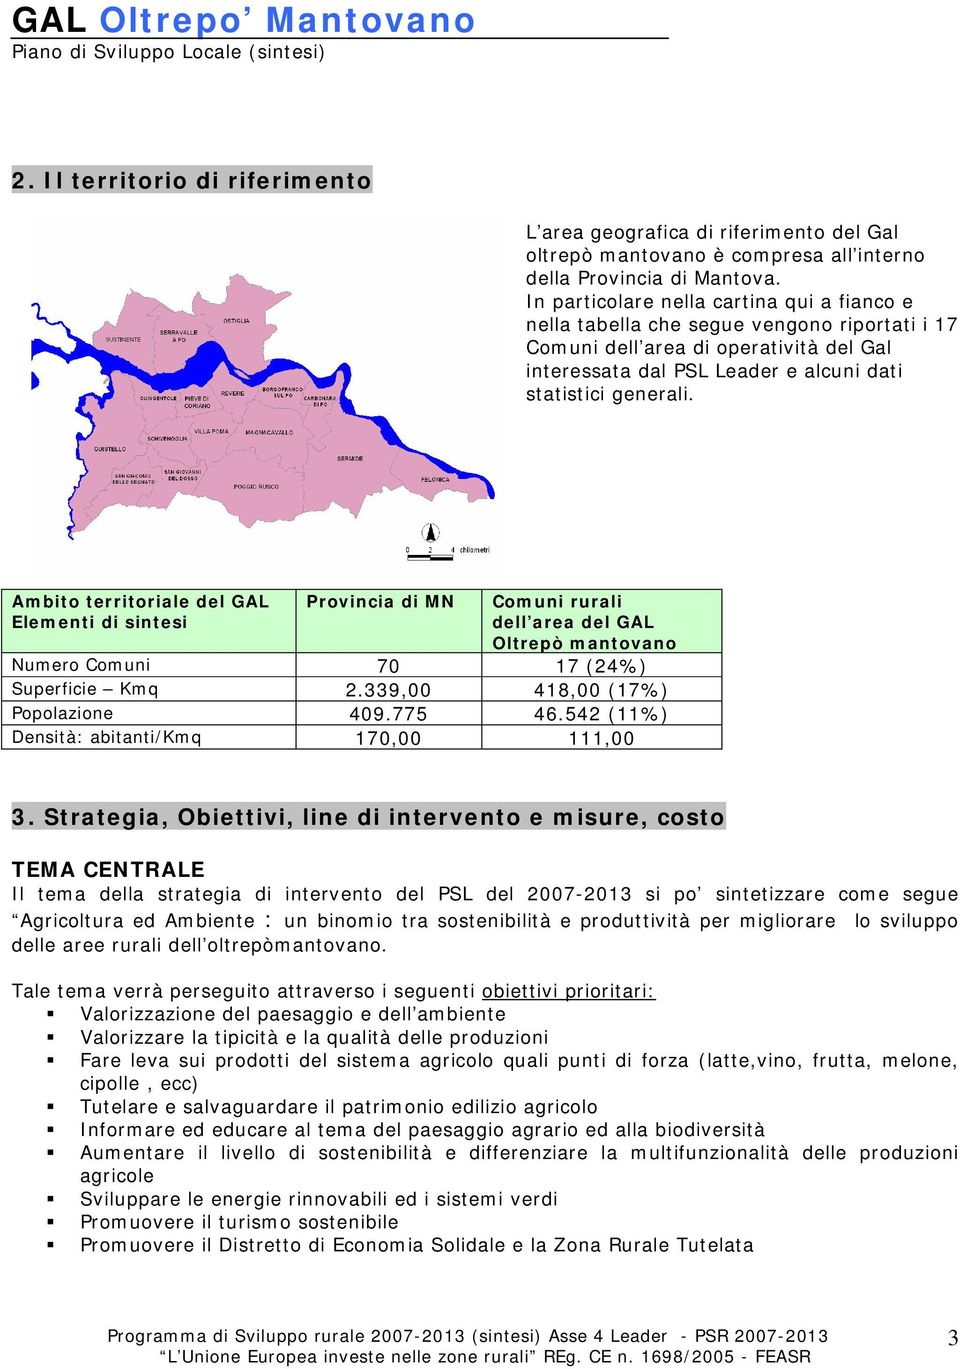 Ambito territoriale del GAL Elementi di sintesi Provincia di MN Comuni rurali dell area del GAL Oltrepò mantovano Numero Comuni 70 17 (24%) Superficie Kmq 2.339,00 418,00 (17%) Popolazione 409.775 46.